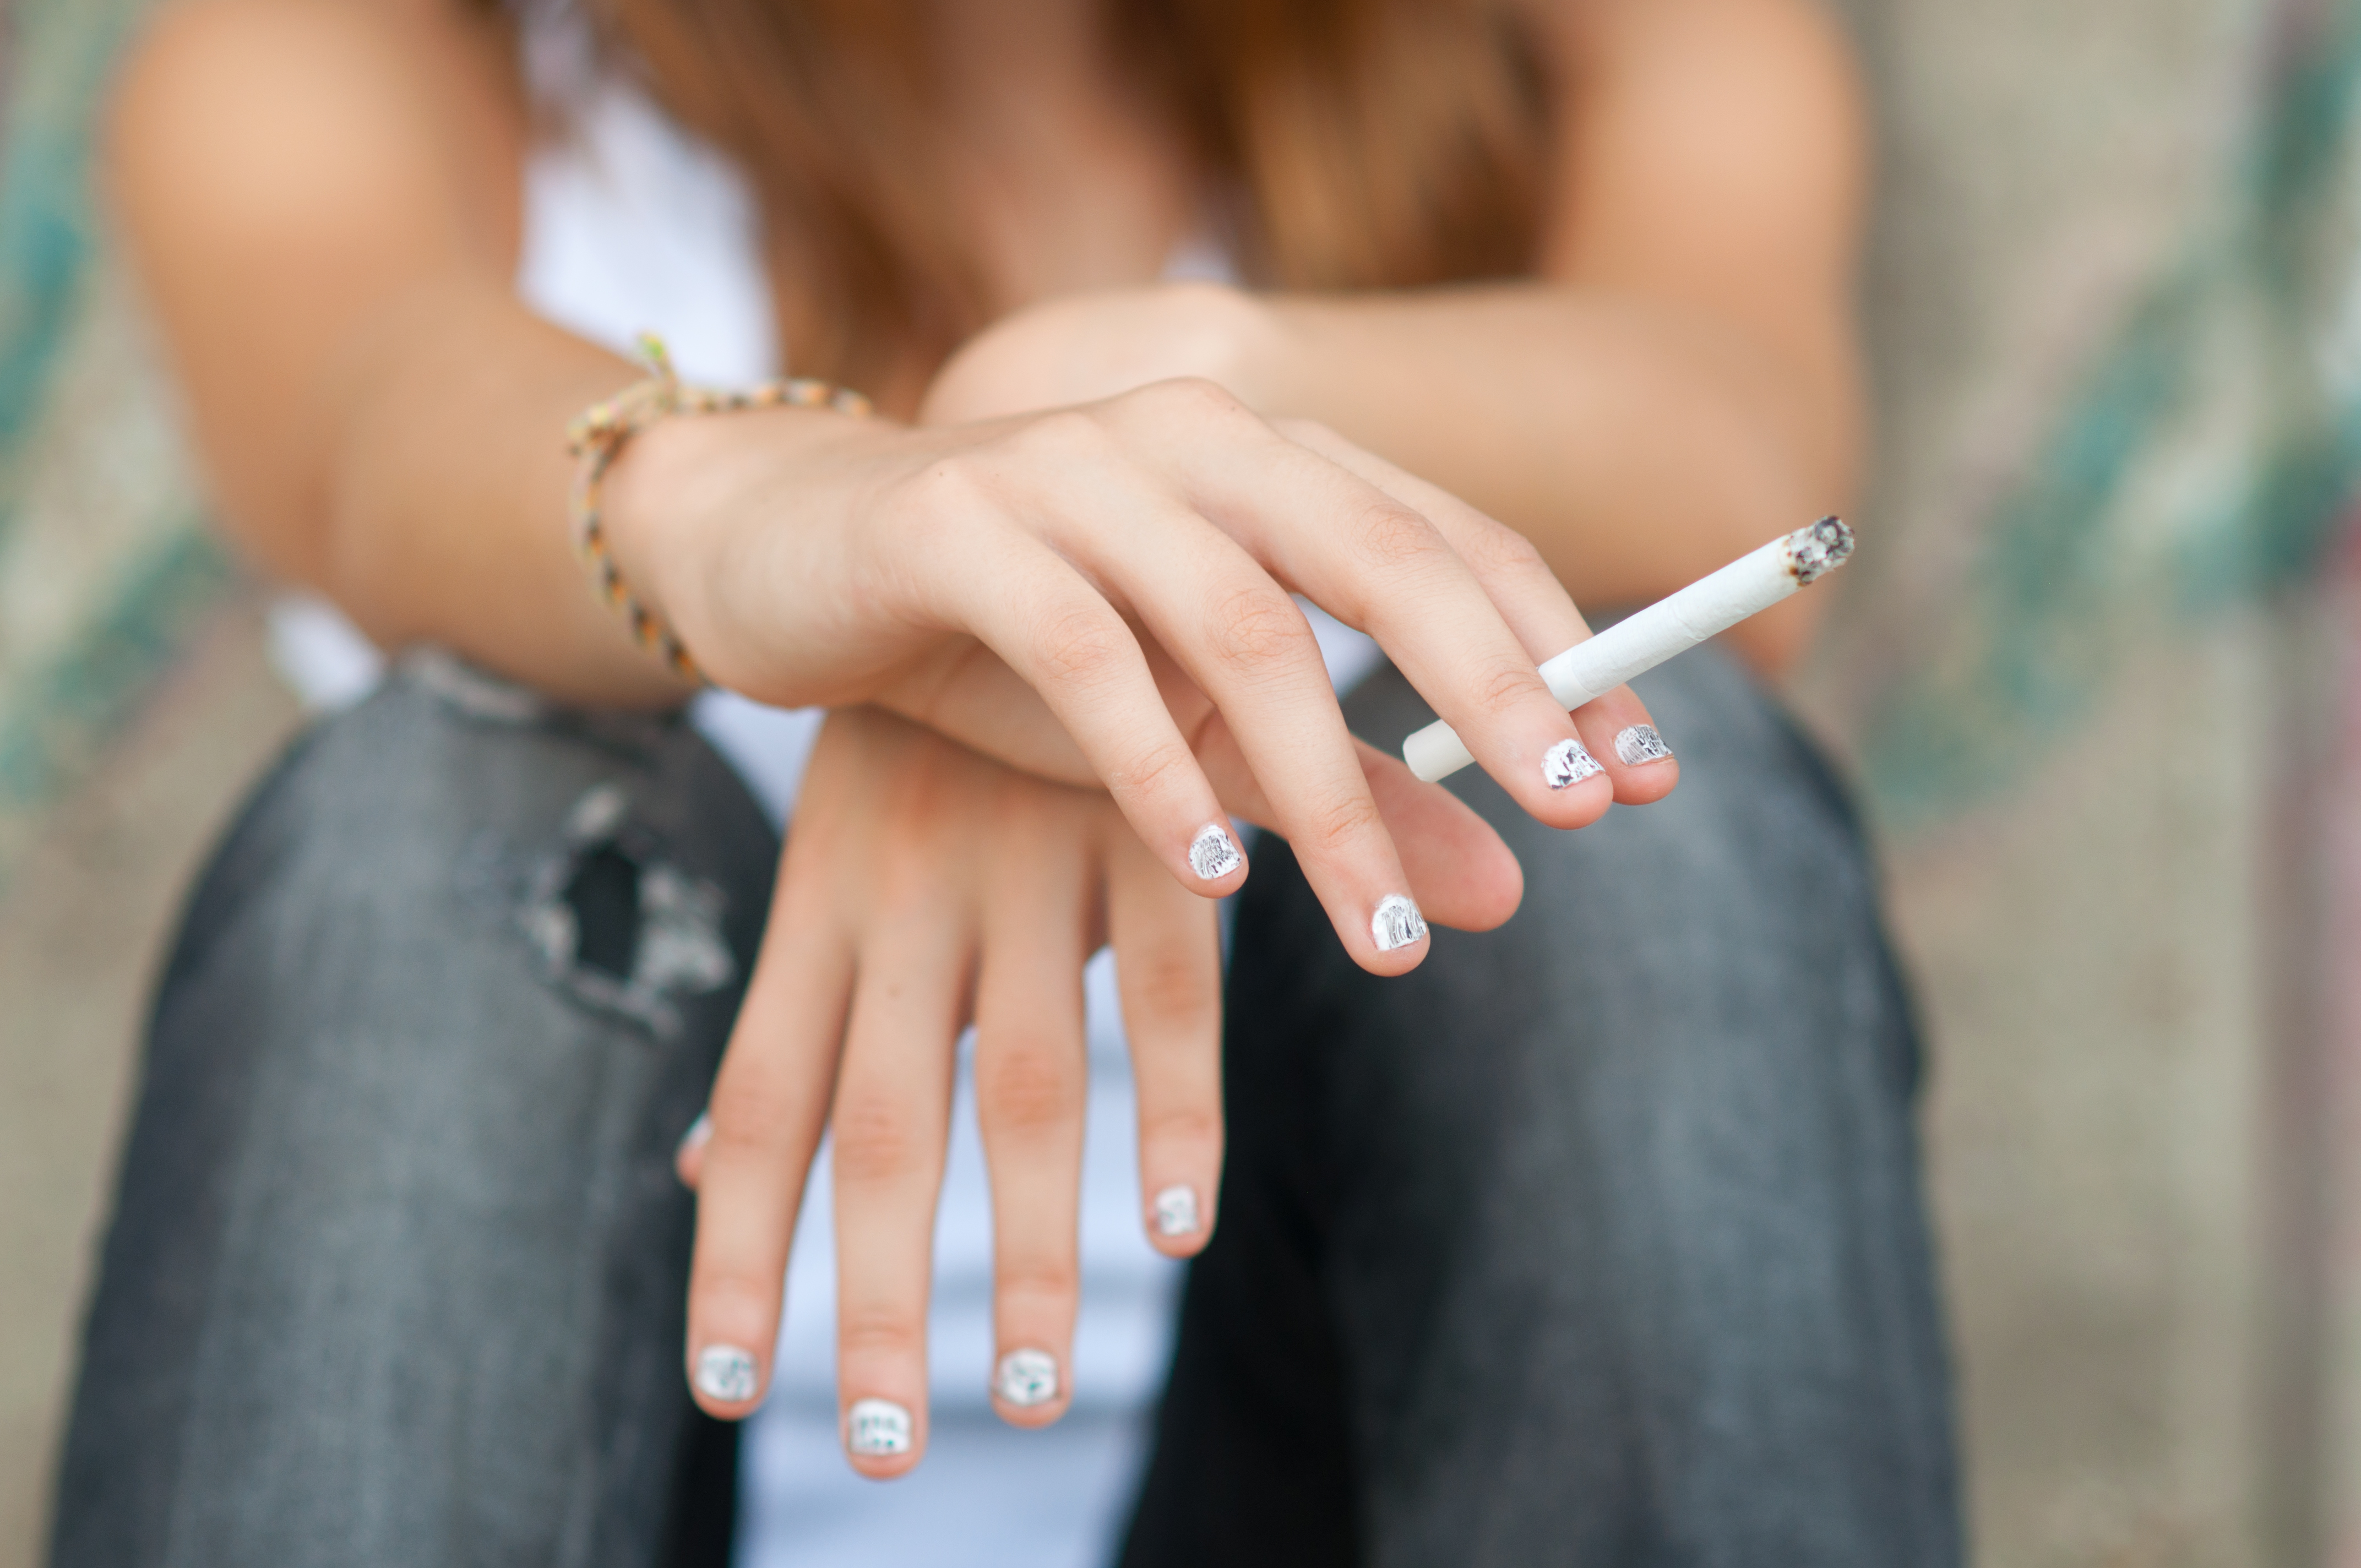 Segundo a OMS, mais de 8 milhões de pessoas morrem no mundo por causa do tabagismo, sendo que 1 milhão são fumantes passivos